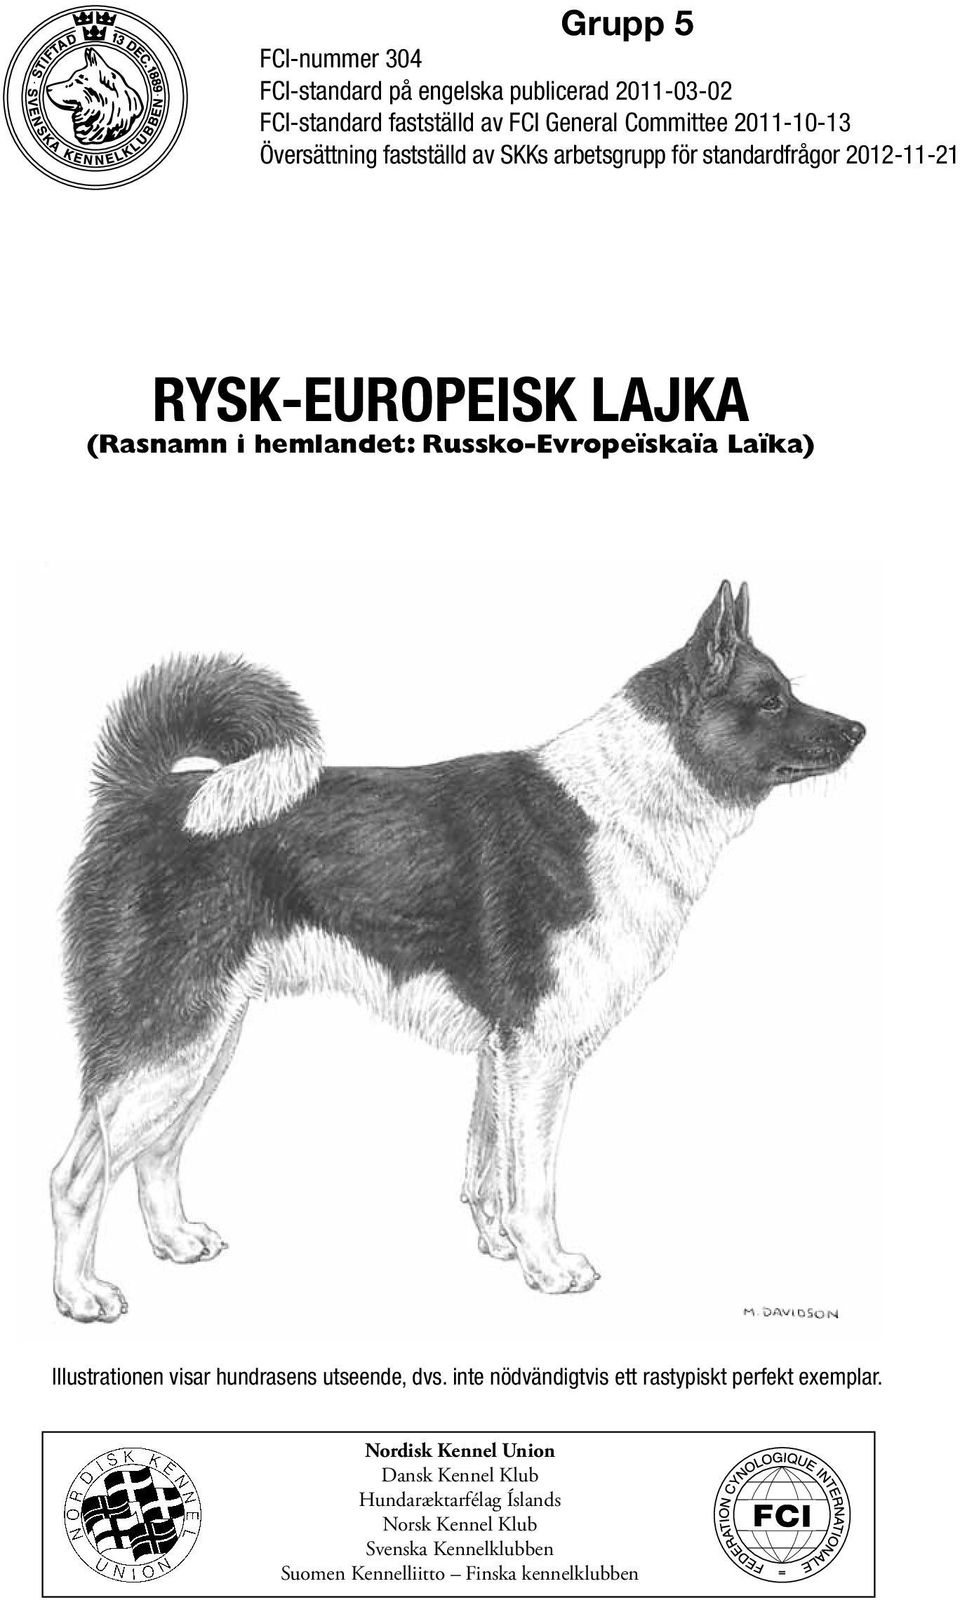 Russko-Evropeïskaïa Laïka) Illustrationen visar hundrasens utseende, dvs. inte nödvändigtvis ett rastypiskt perfekt exemplar.